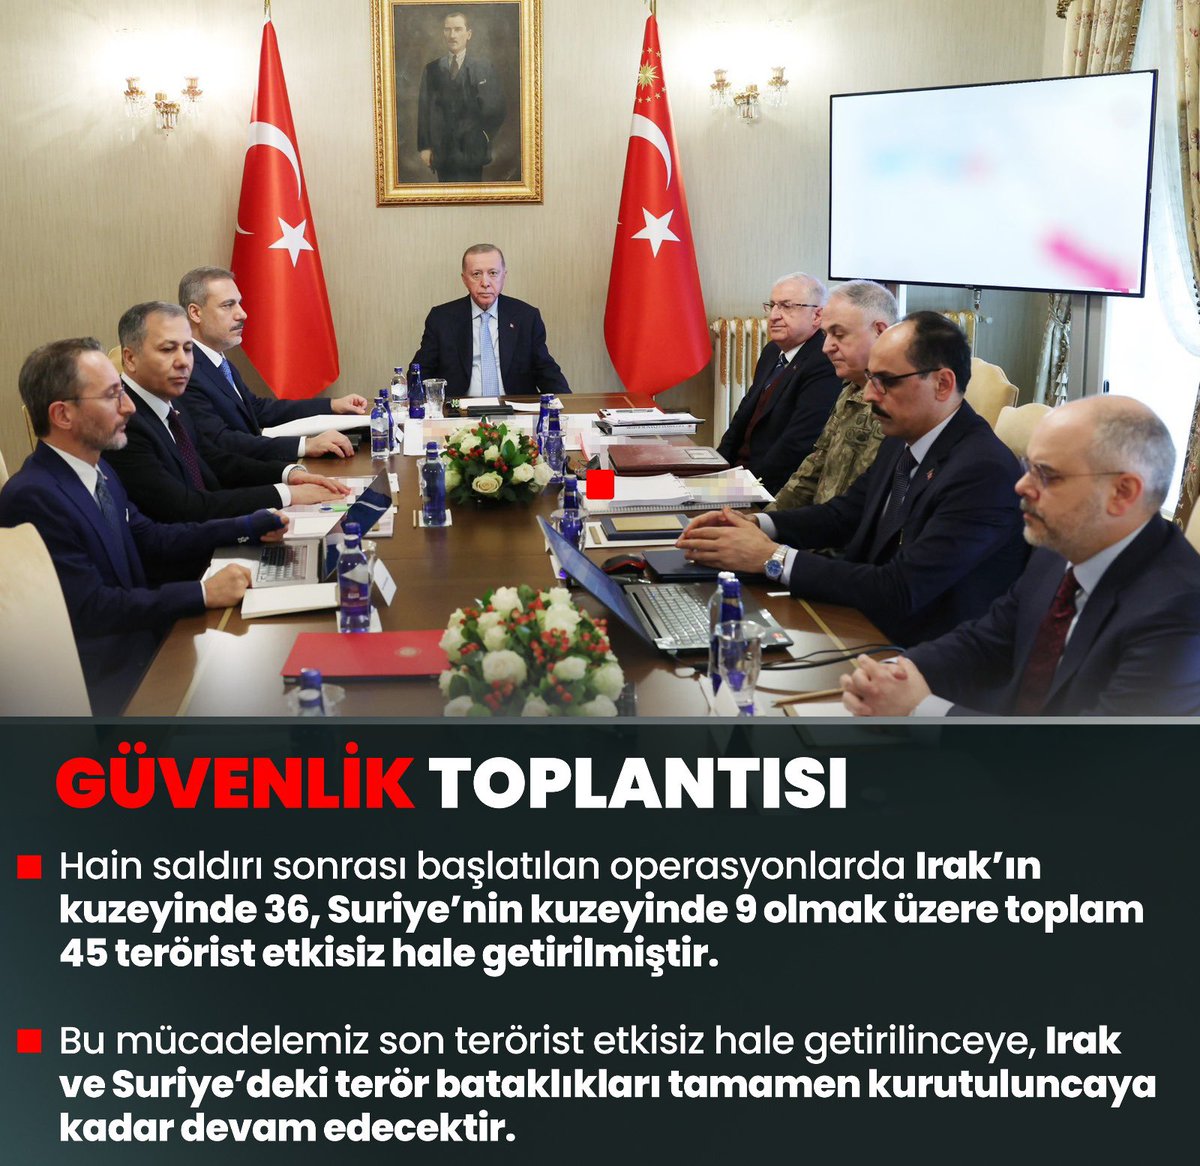 Genel Başkanımız ve Cumhurbaşkanımız Sn.Recep Tayyip Erdoğan: Türkiye düşmanlarının taşeronluğunu üstlenen bölücü alçaklardan döktükleri her damla kanın hesabı misliyle sorulmaktadır ve sorulacaktır. #GüvenlikToplantısı